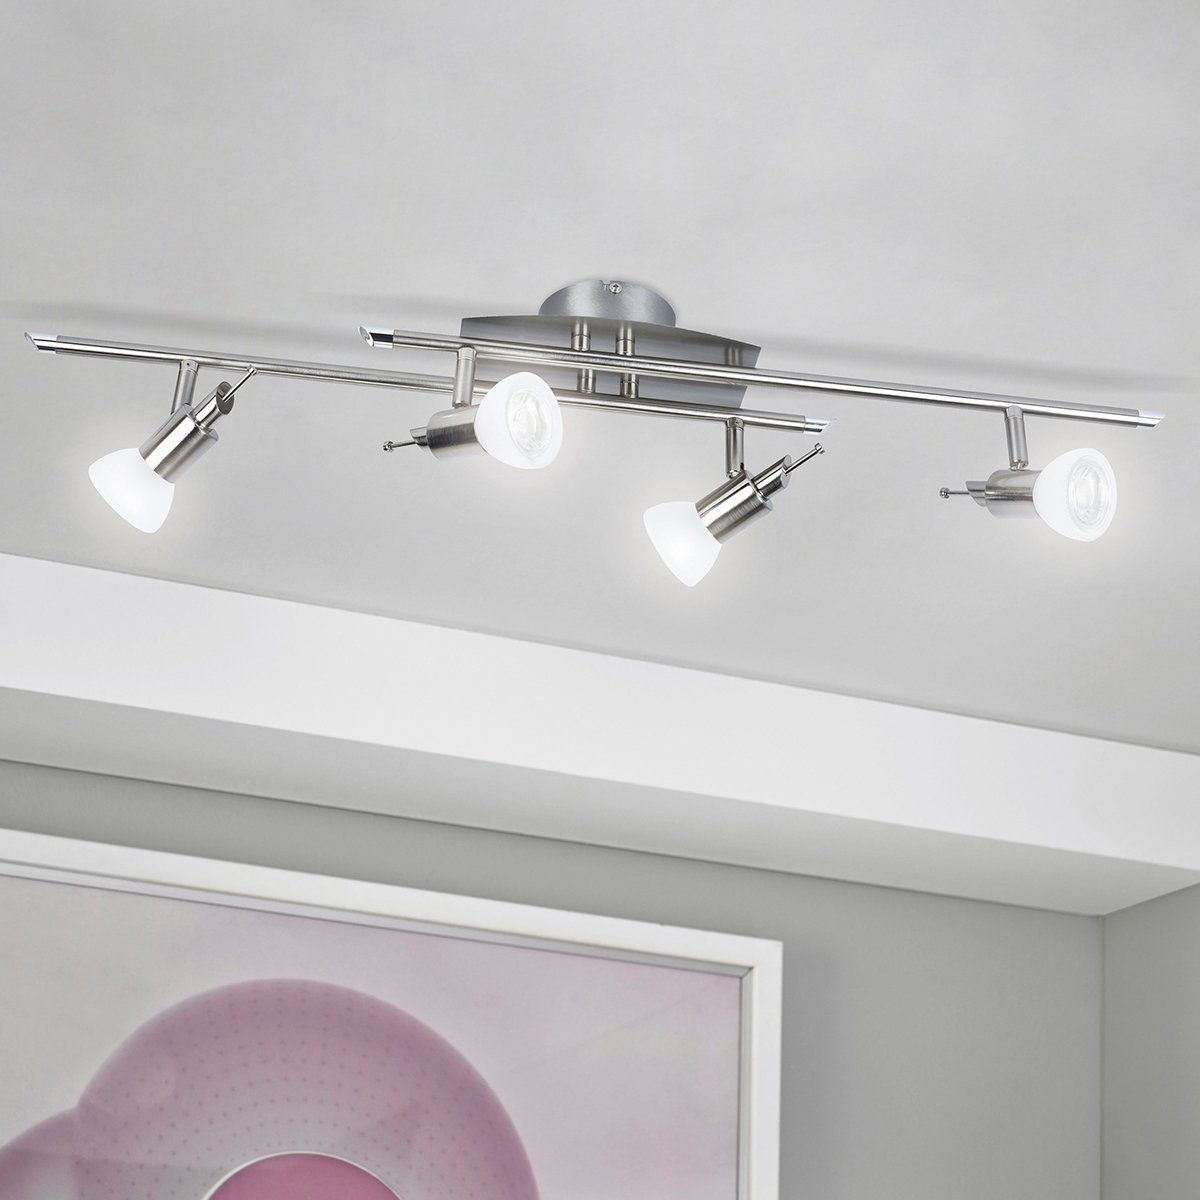 Deckenlampe, Design, MeLiTec D81-1, Beleuchtung, LED Wohnzimmer, Deckenstrahler, Deckenleuchte LED, Decken, Lampe